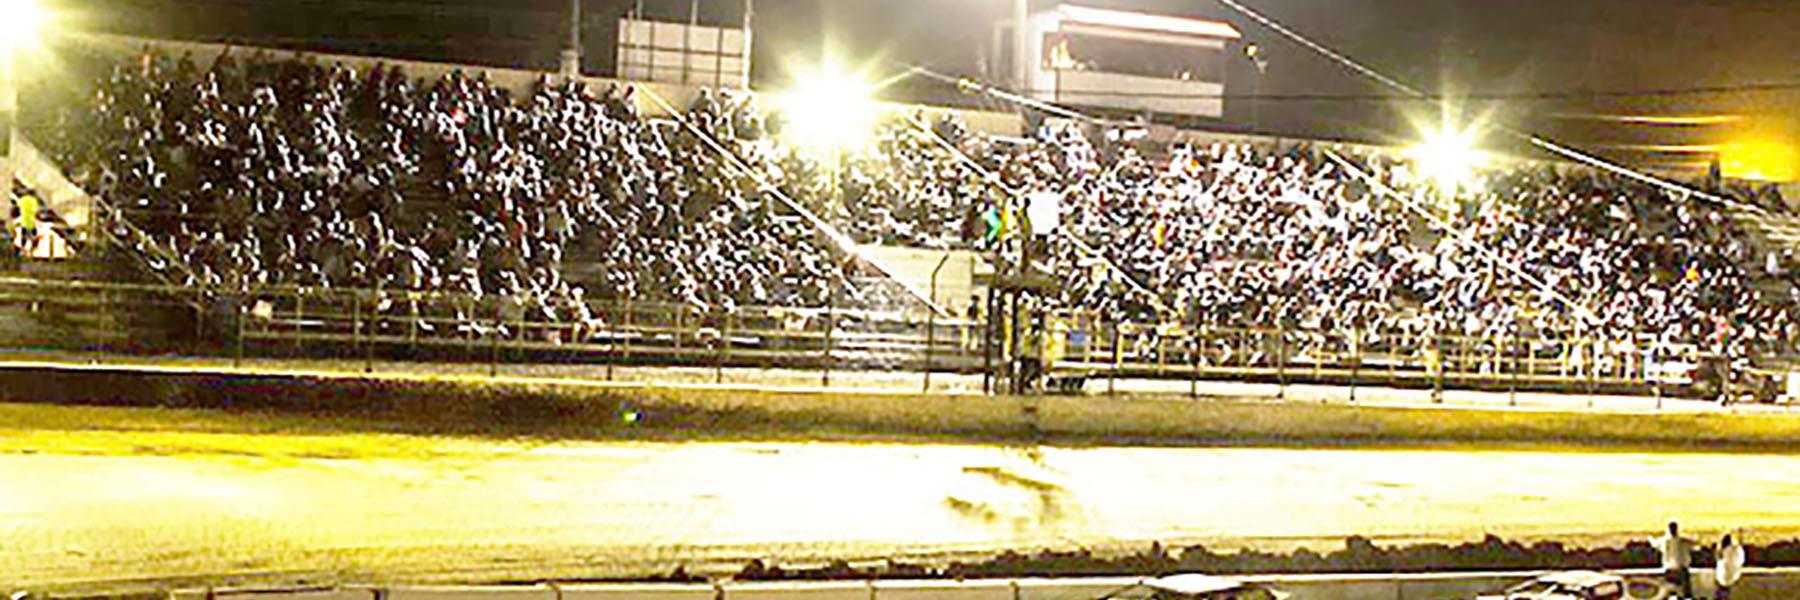 10/24/2020 - Tri-State Speedway